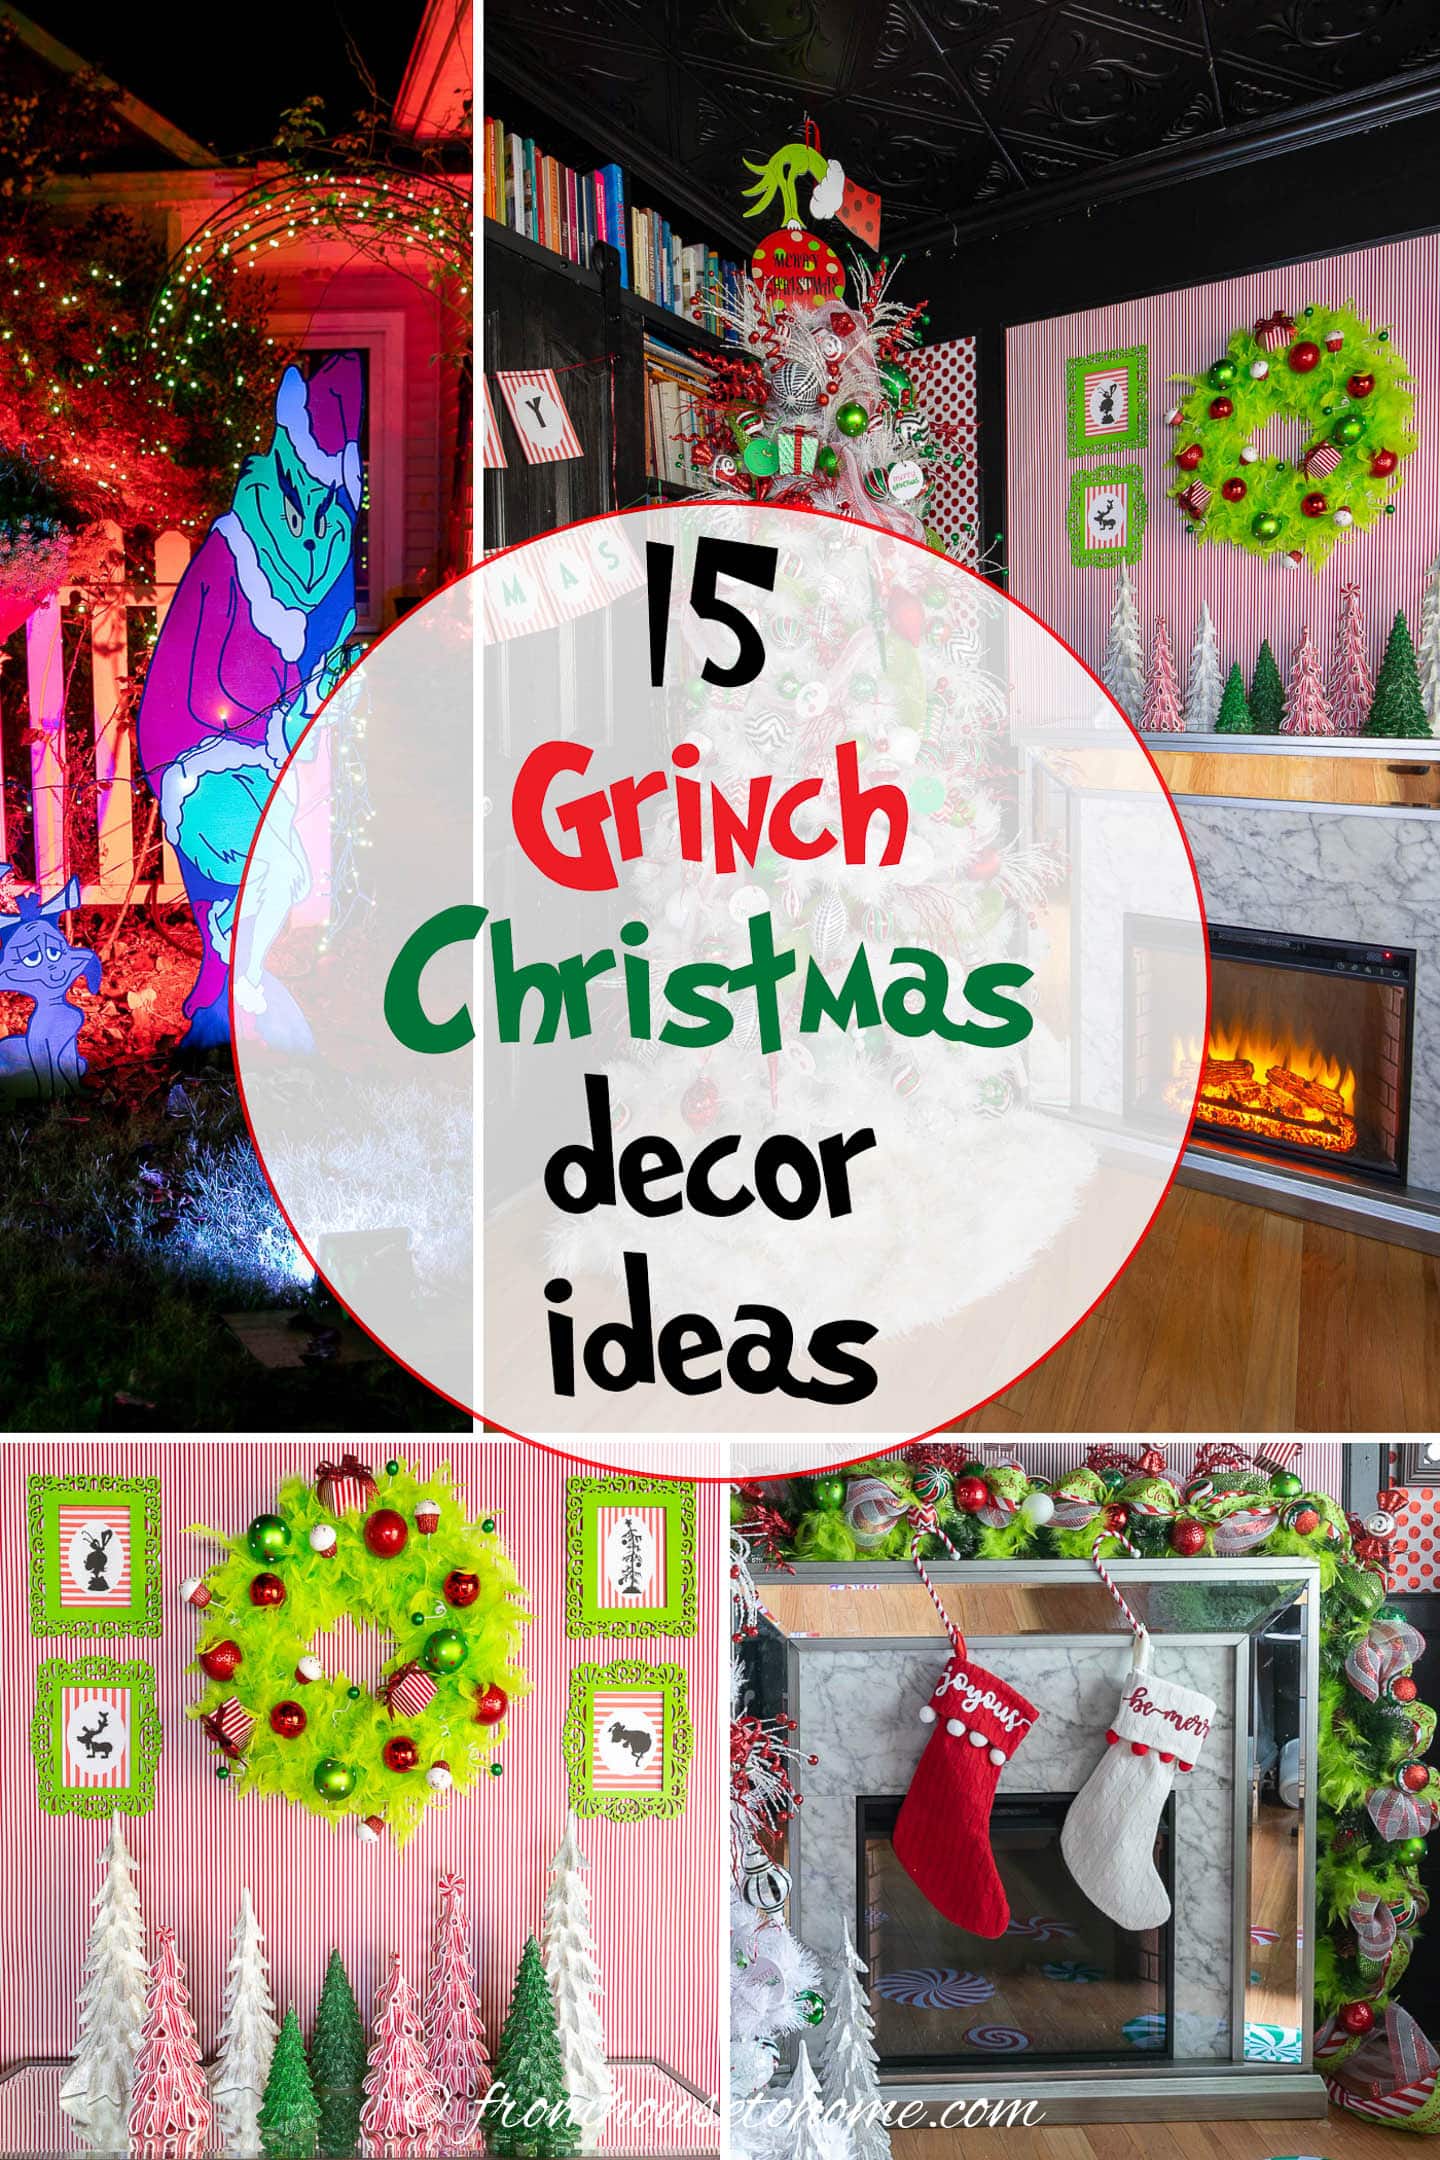 Grinch Christmas decor ideas